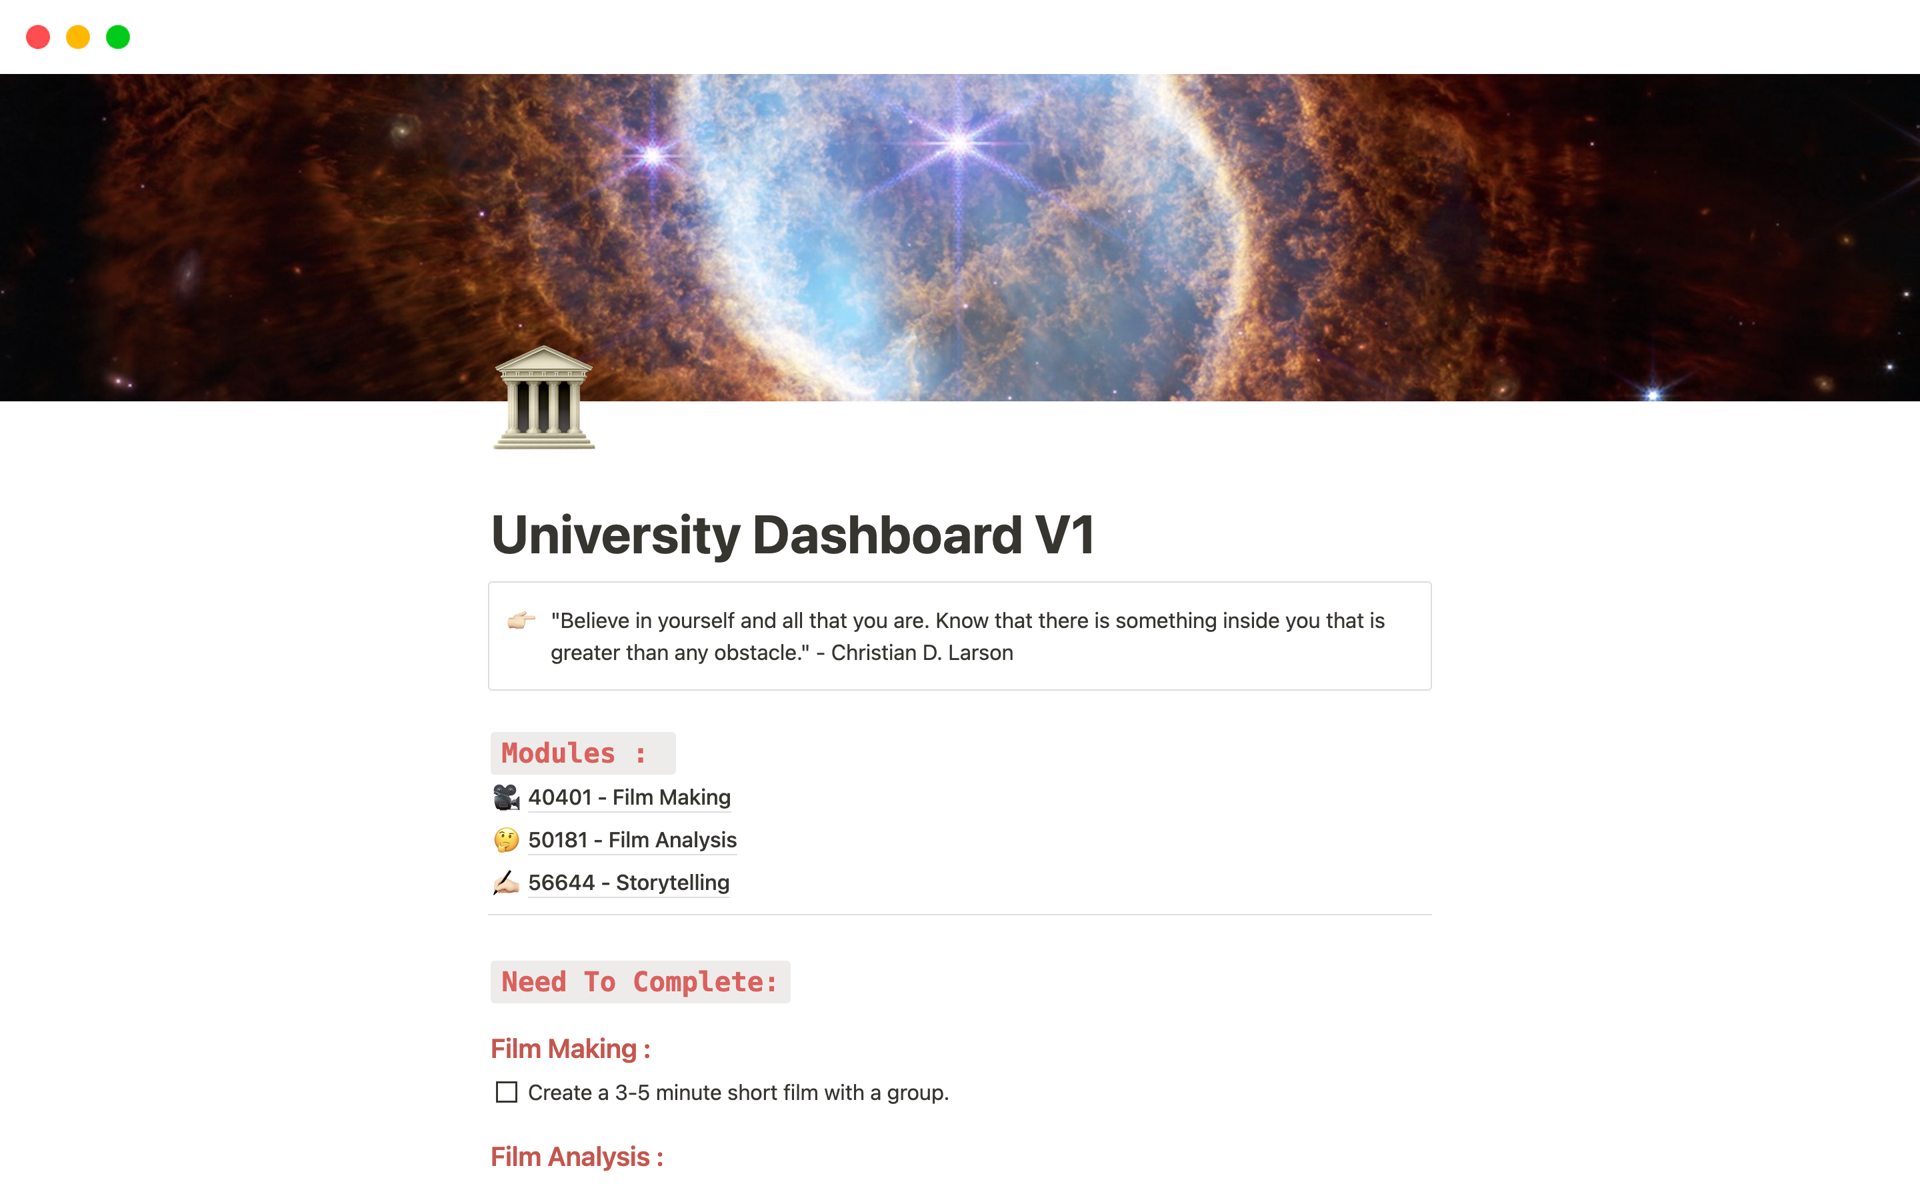 Aperçu du modèle de University Dashboard V1